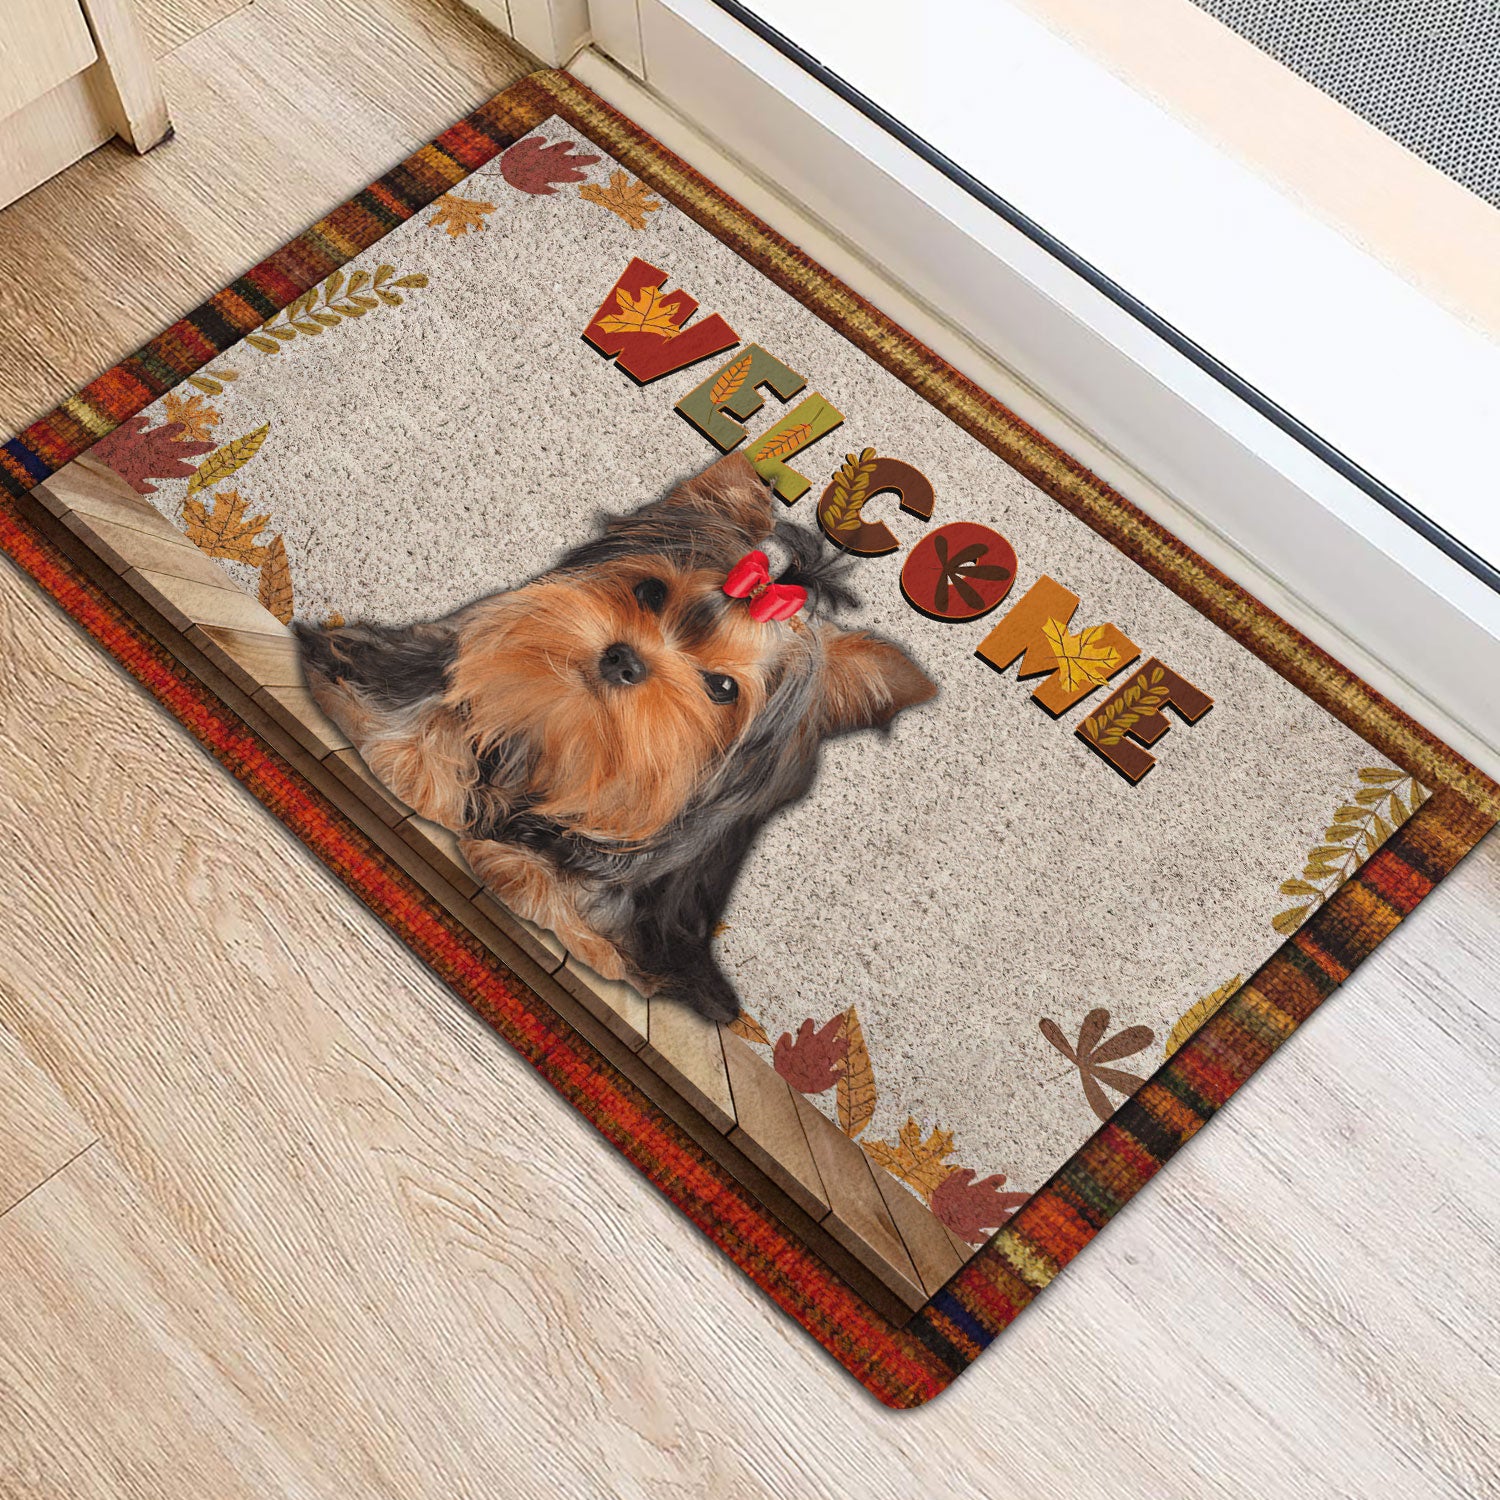 Ohaprints-Doormat-Outdoor-Indoor-Yorkshire-Terrier-Welcome-Fall-Autumn-Pumpkin-Spice-Maple-Leaf-Rubber-Door-Mat-1719-